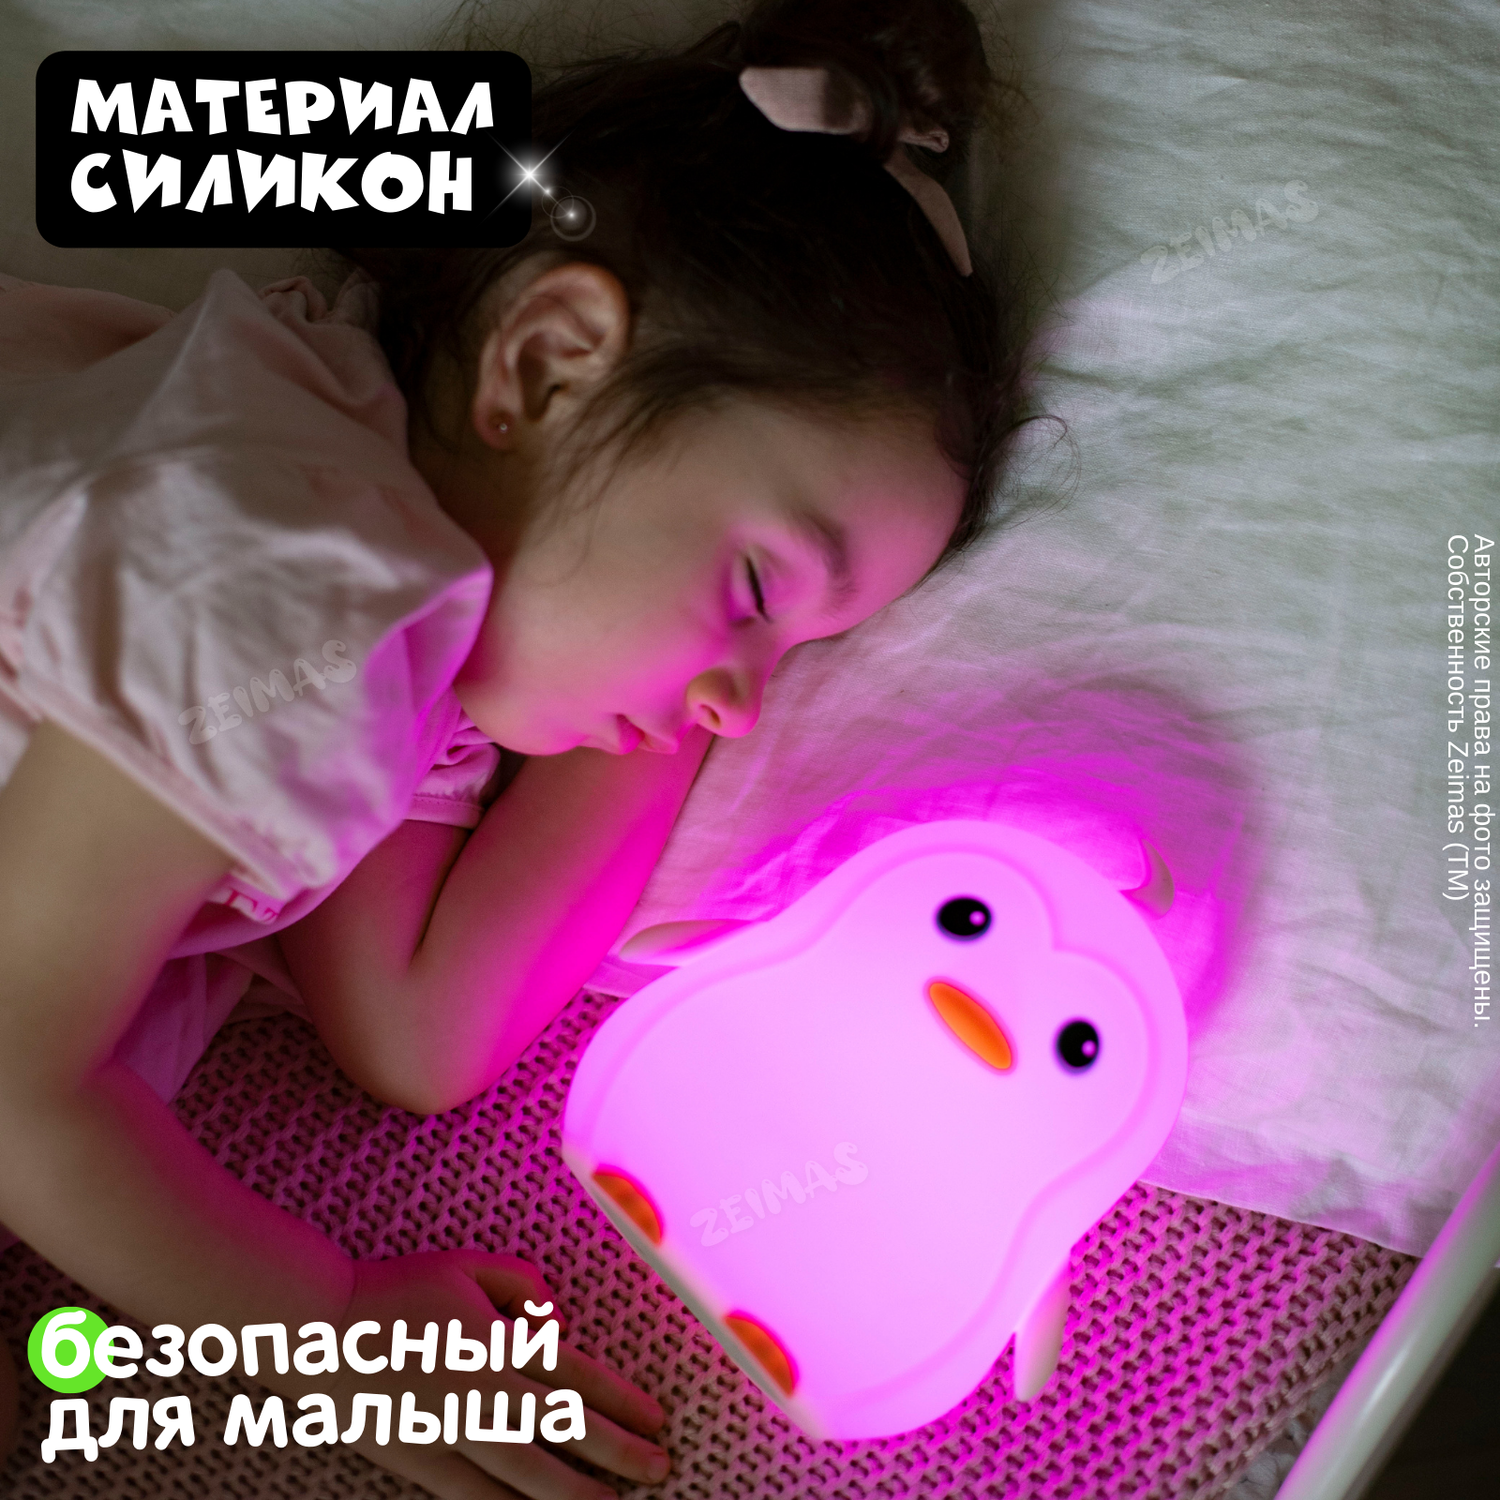 Ночник детский силиконовый Zeimas светильник игрушка Пингвин с пультом 9 цветов большой размер - фото 9